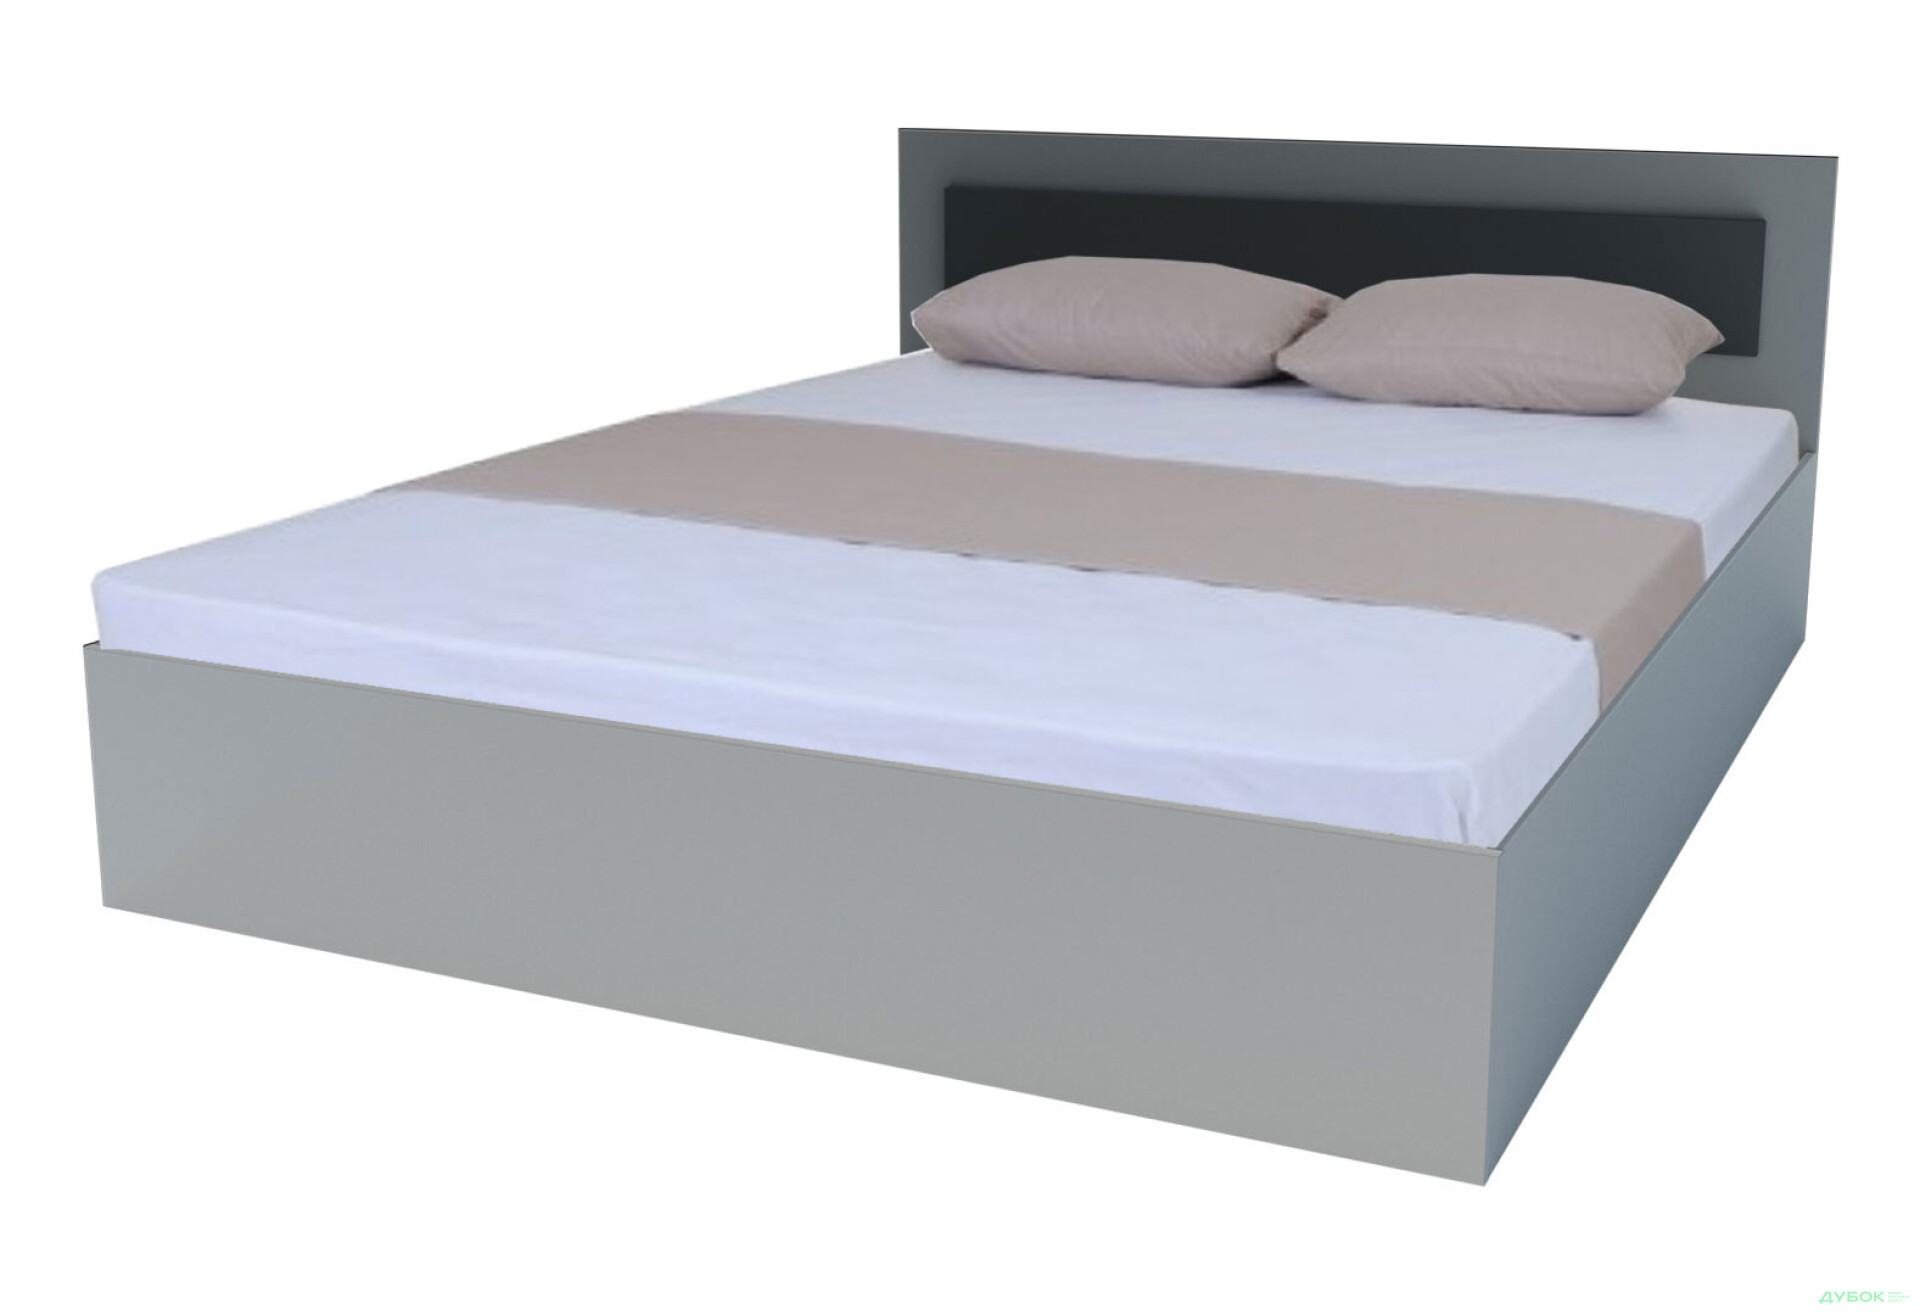 Фото 1 - Кровать Garant NV Вива / Viva 160 см, шиншилла грей / серый графит